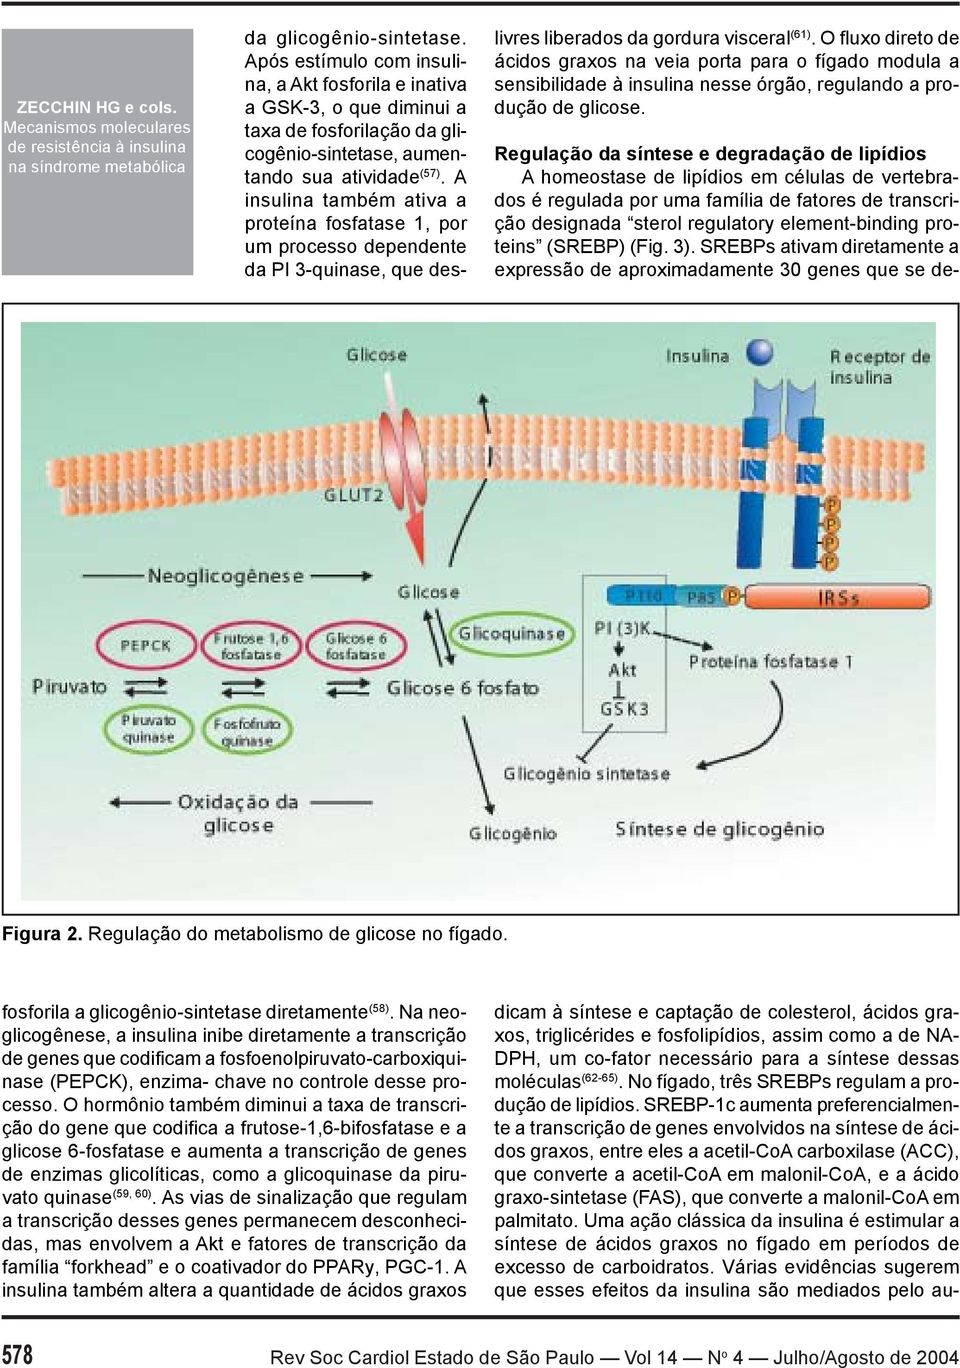 proteins (SREBP) (Fig. 3). SREBPs ativam diretamente a expressão de aproximadamente 30 genes que se de- Figura 2. Regulação do metabolismo de glicose no fígado. da glicogênio-sintetase.